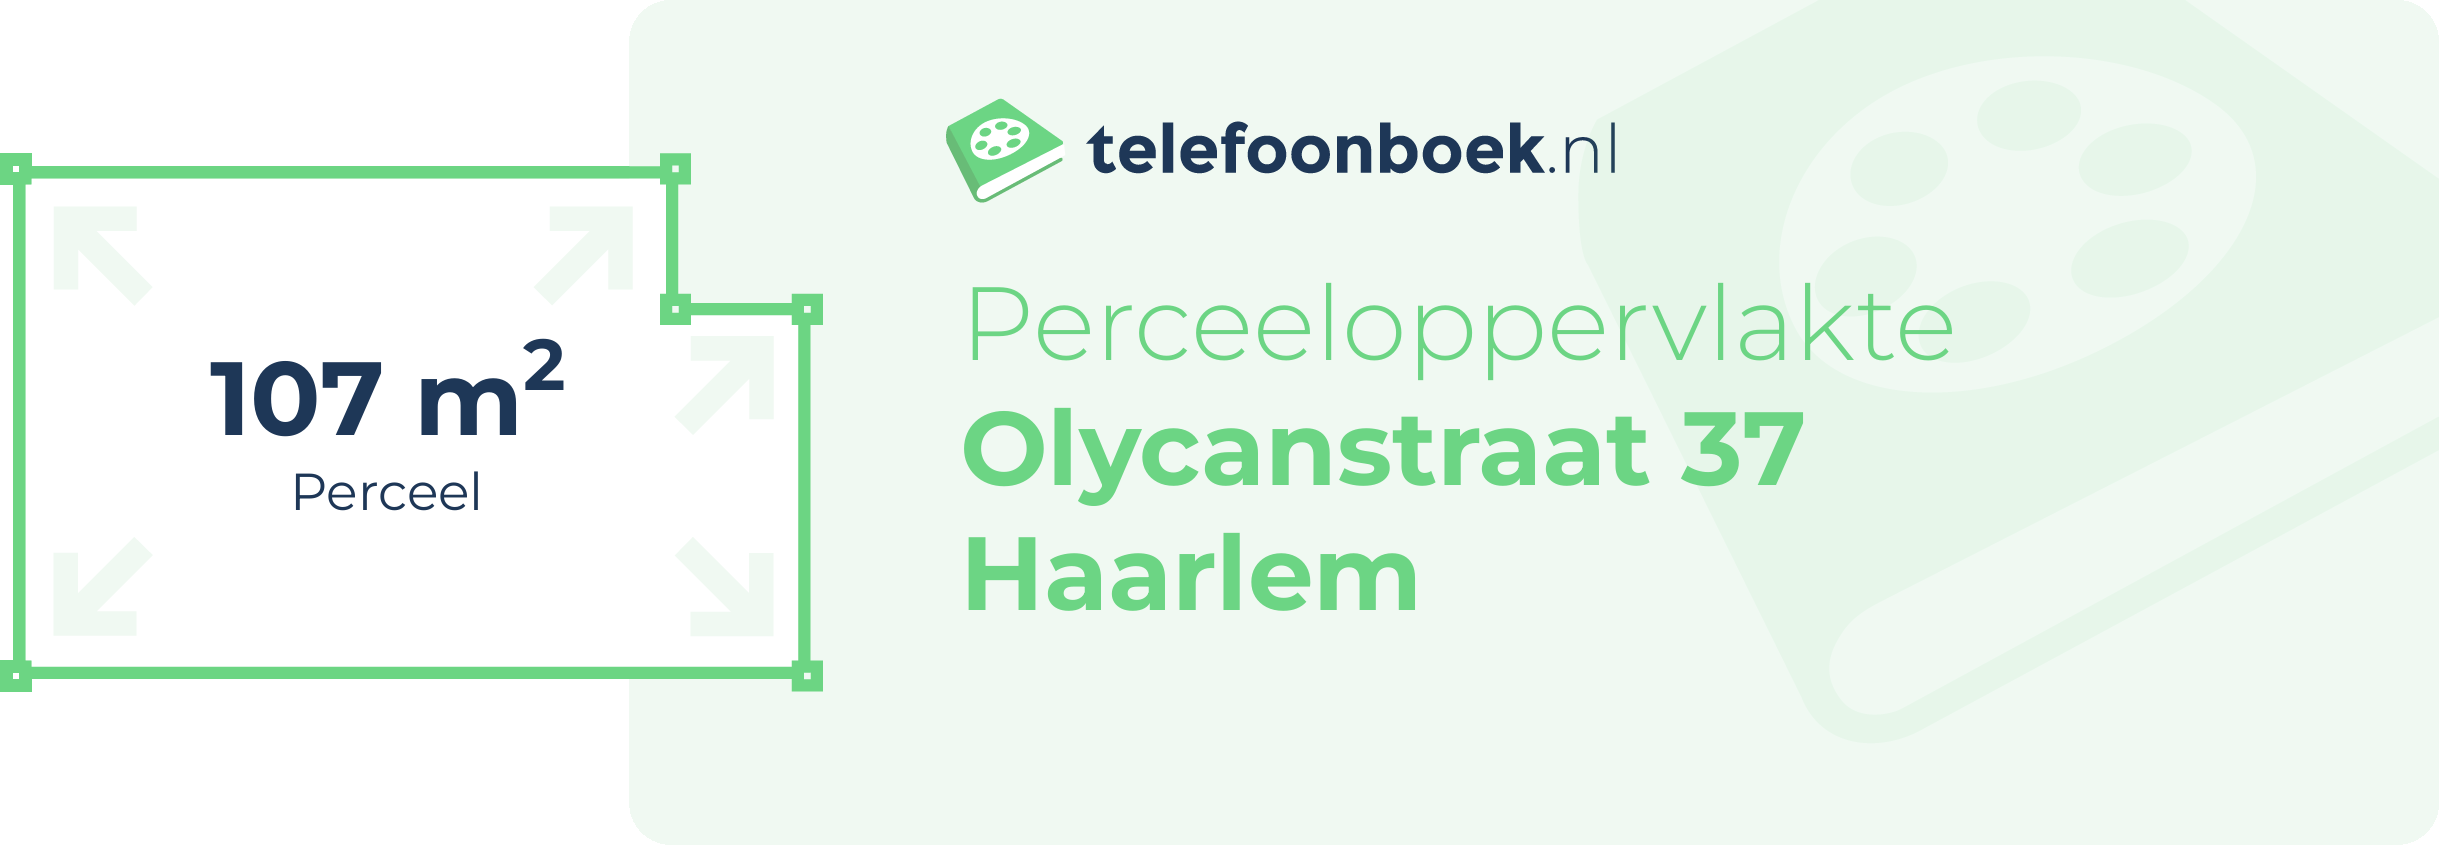 Perceeloppervlakte Olycanstraat 37 Haarlem